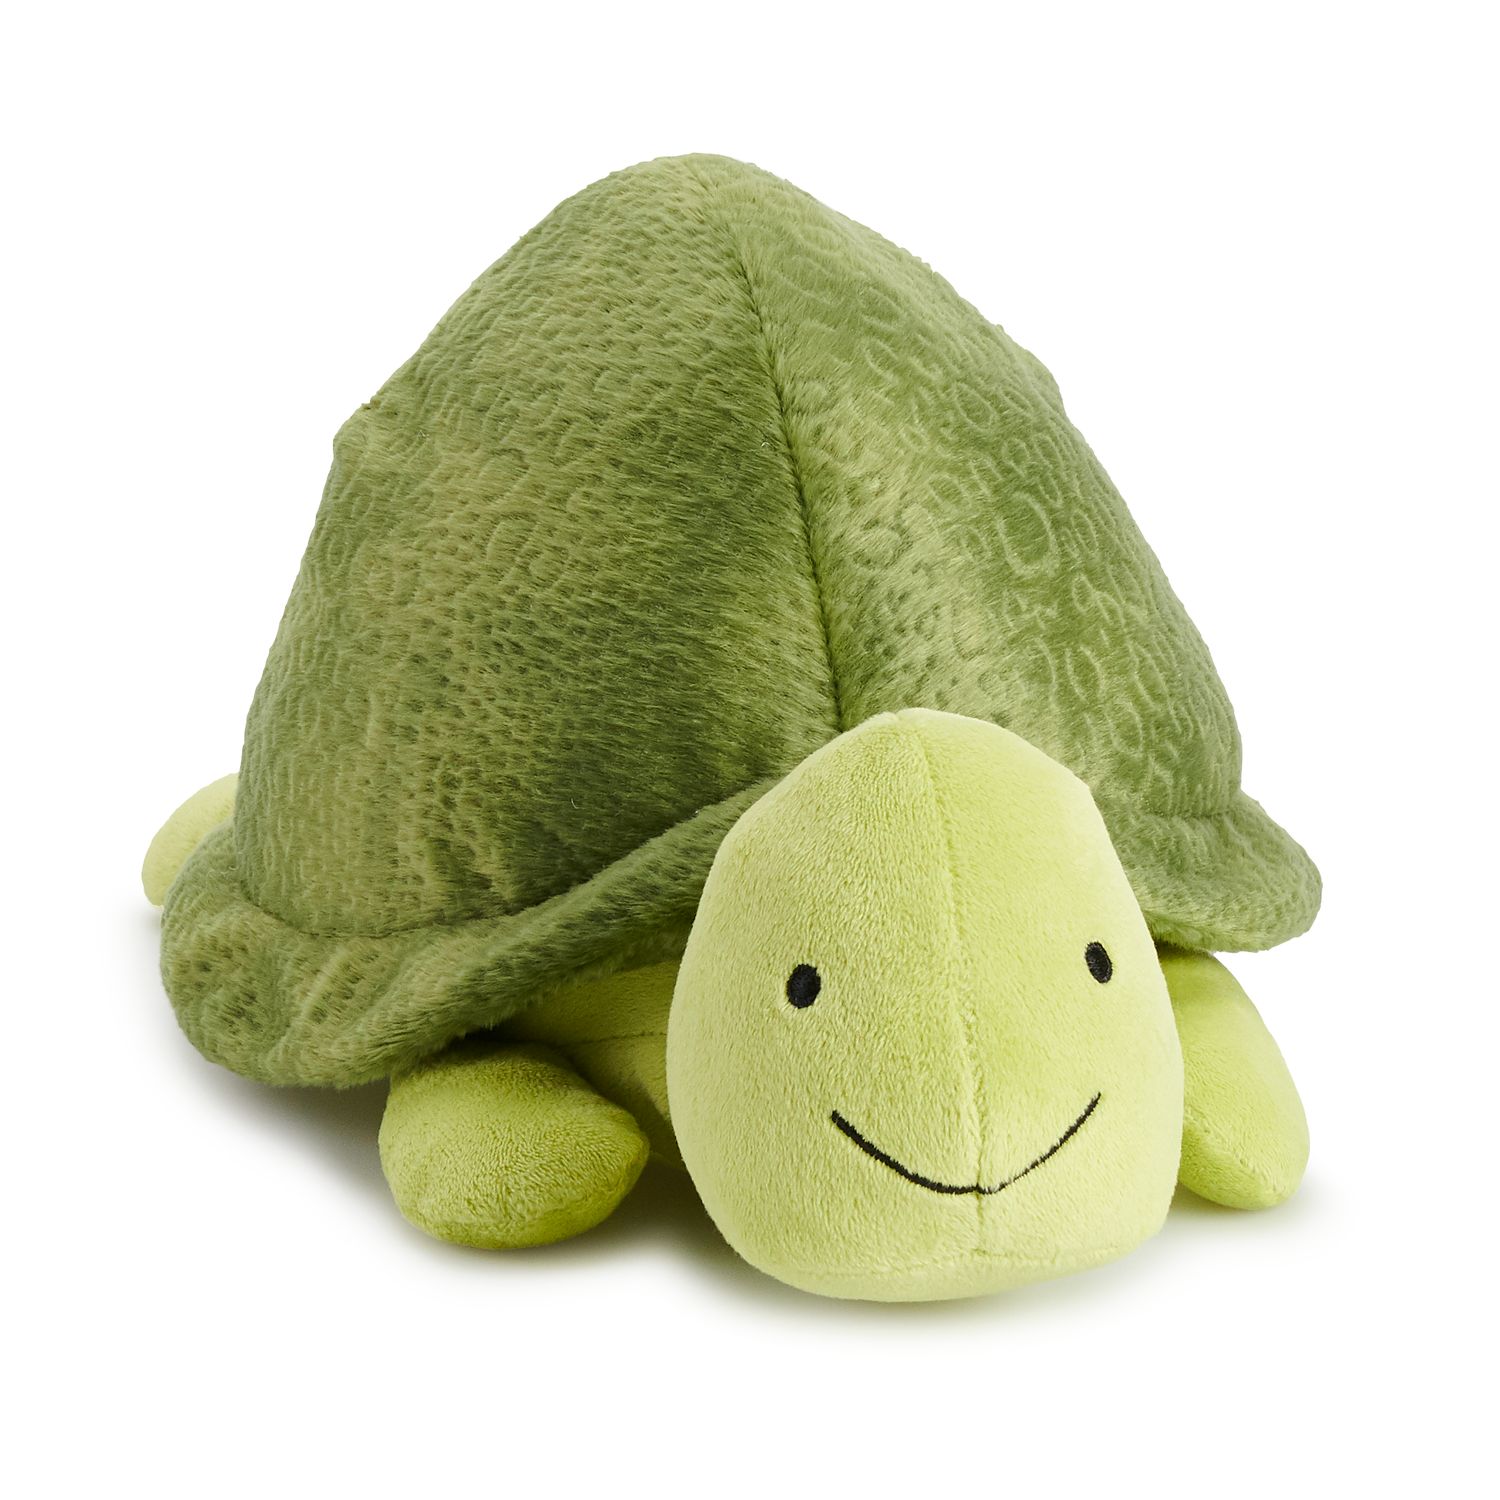 turtle stuffed animal